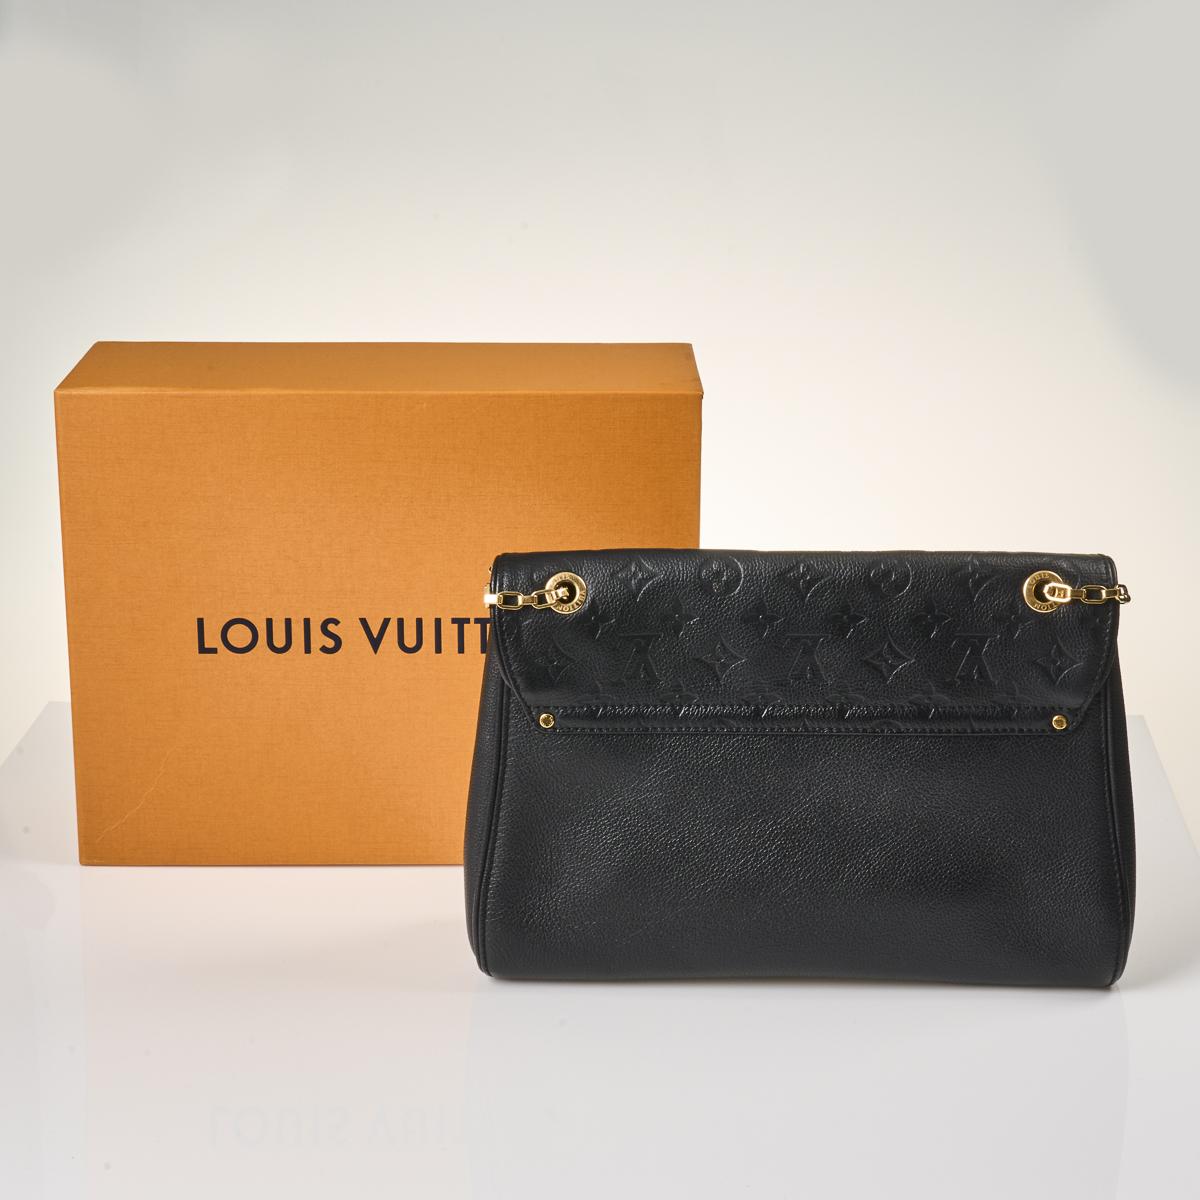 Sold at Auction: Louis Vuitton, Louis Vuitton Monogram Empreinte